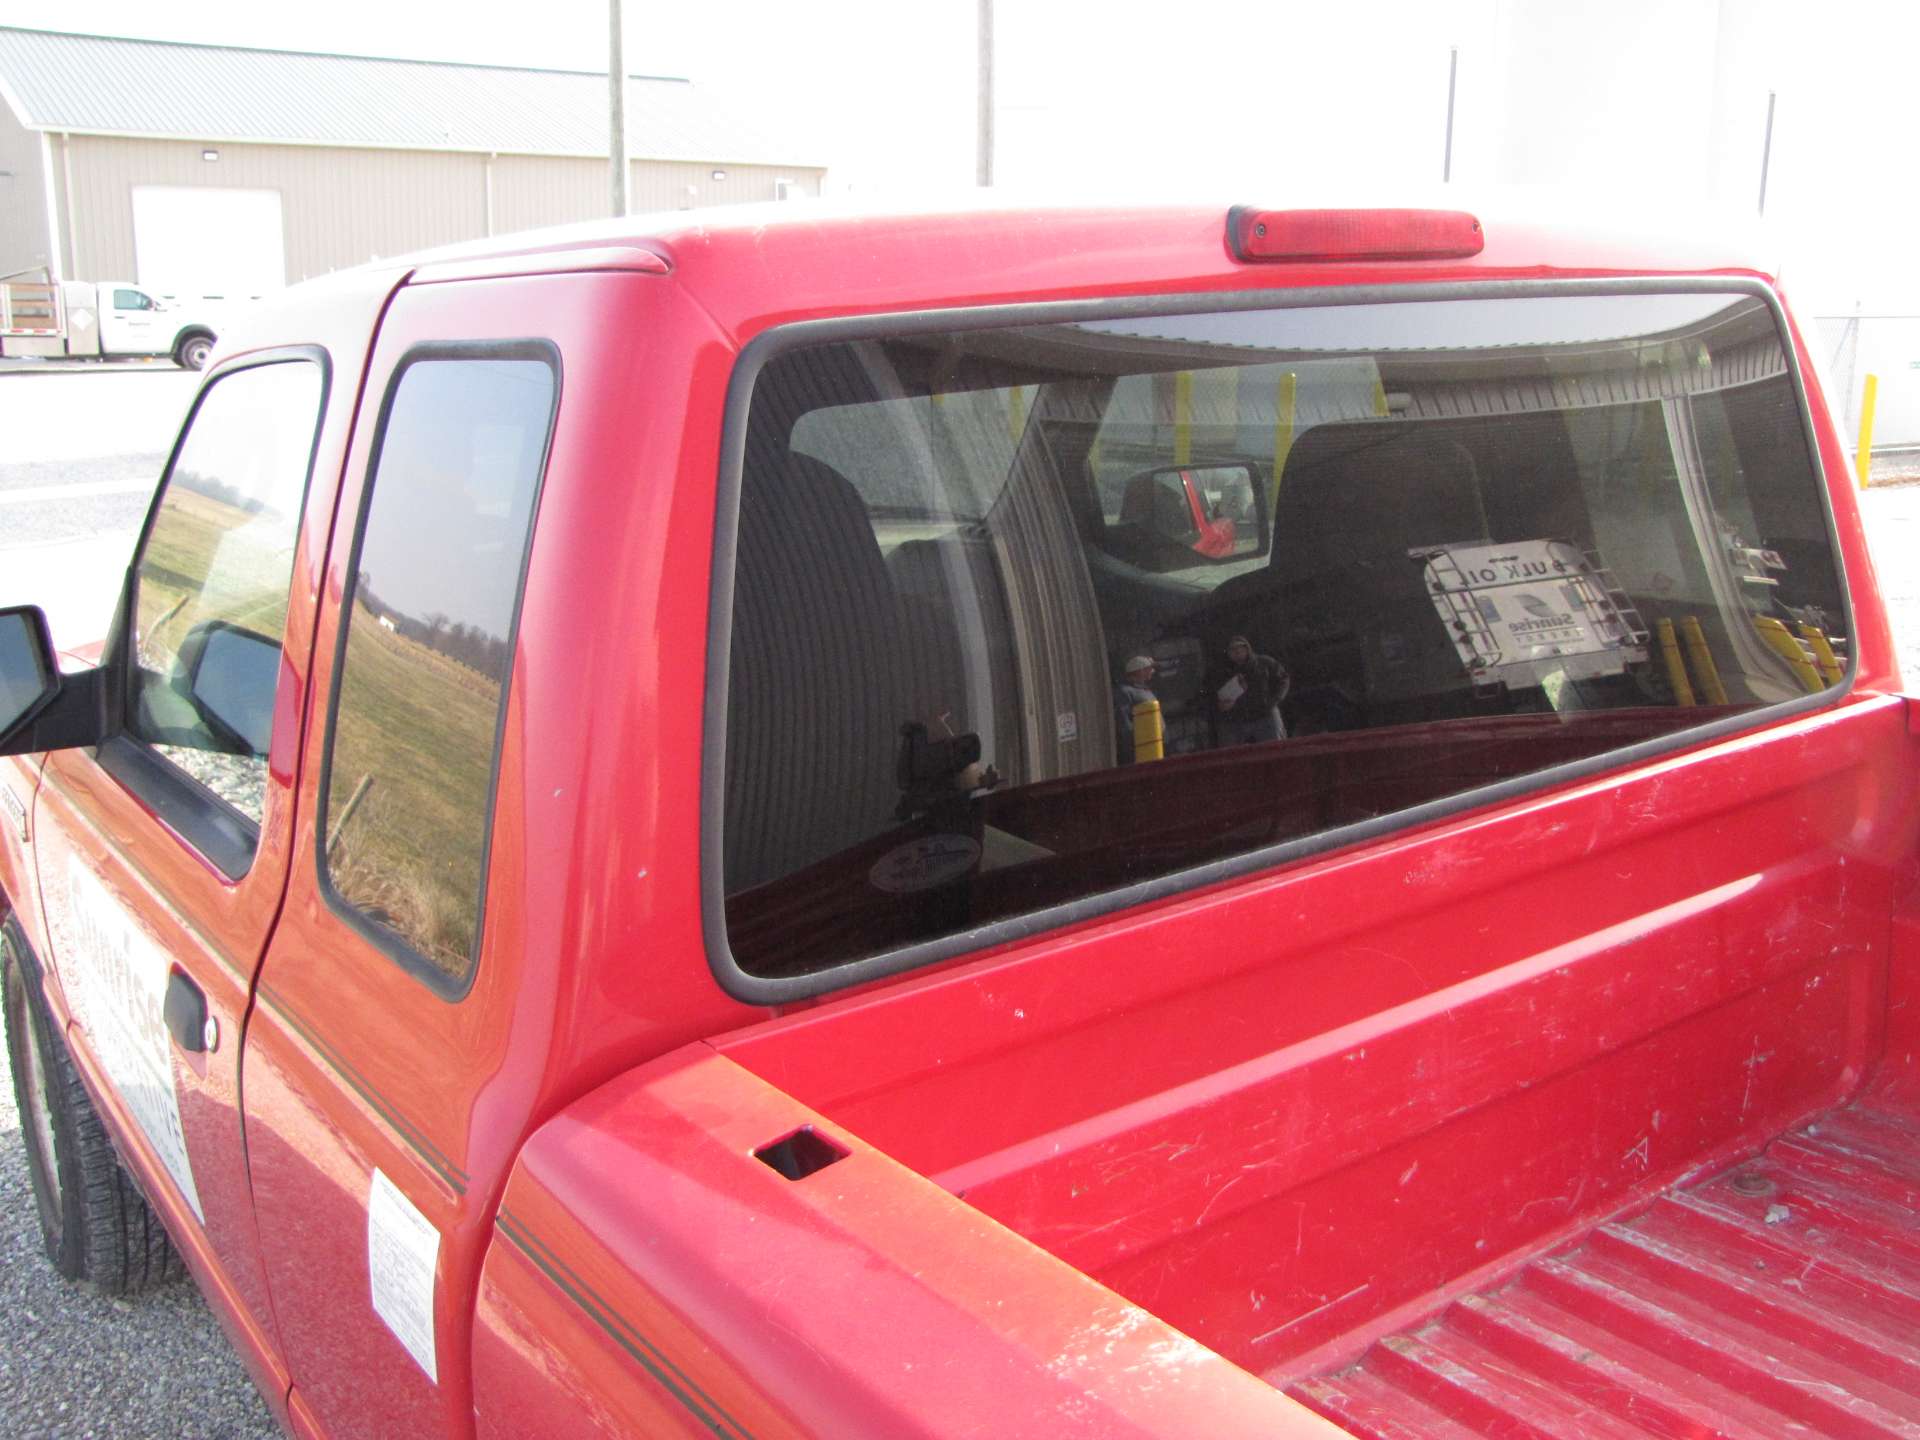 2008 Ford Ranger XLT pickup truck - Image 19 of 57